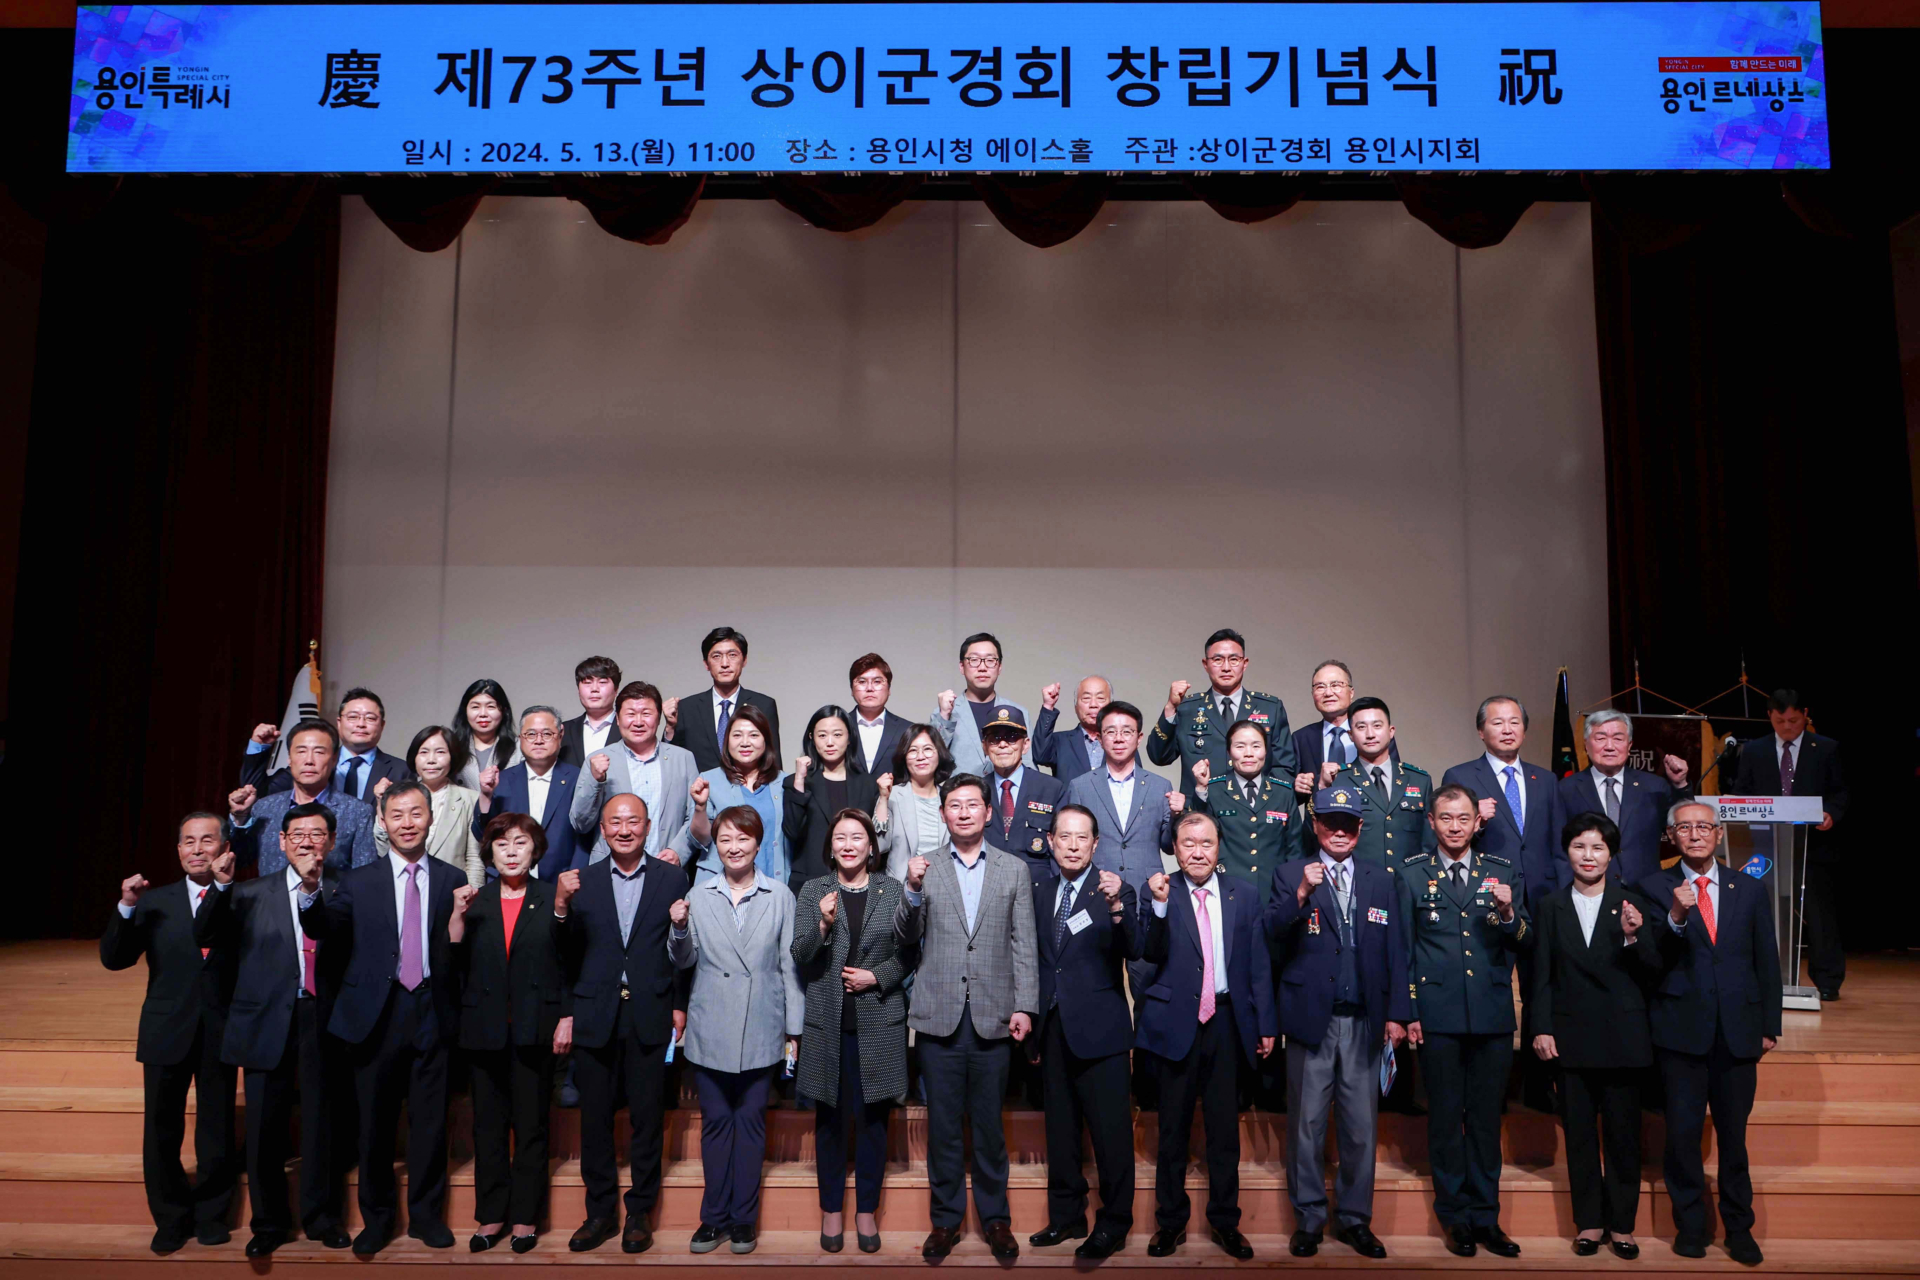 용인특례시, ‘제73주년 상이군경회 창립기념식’ 개최